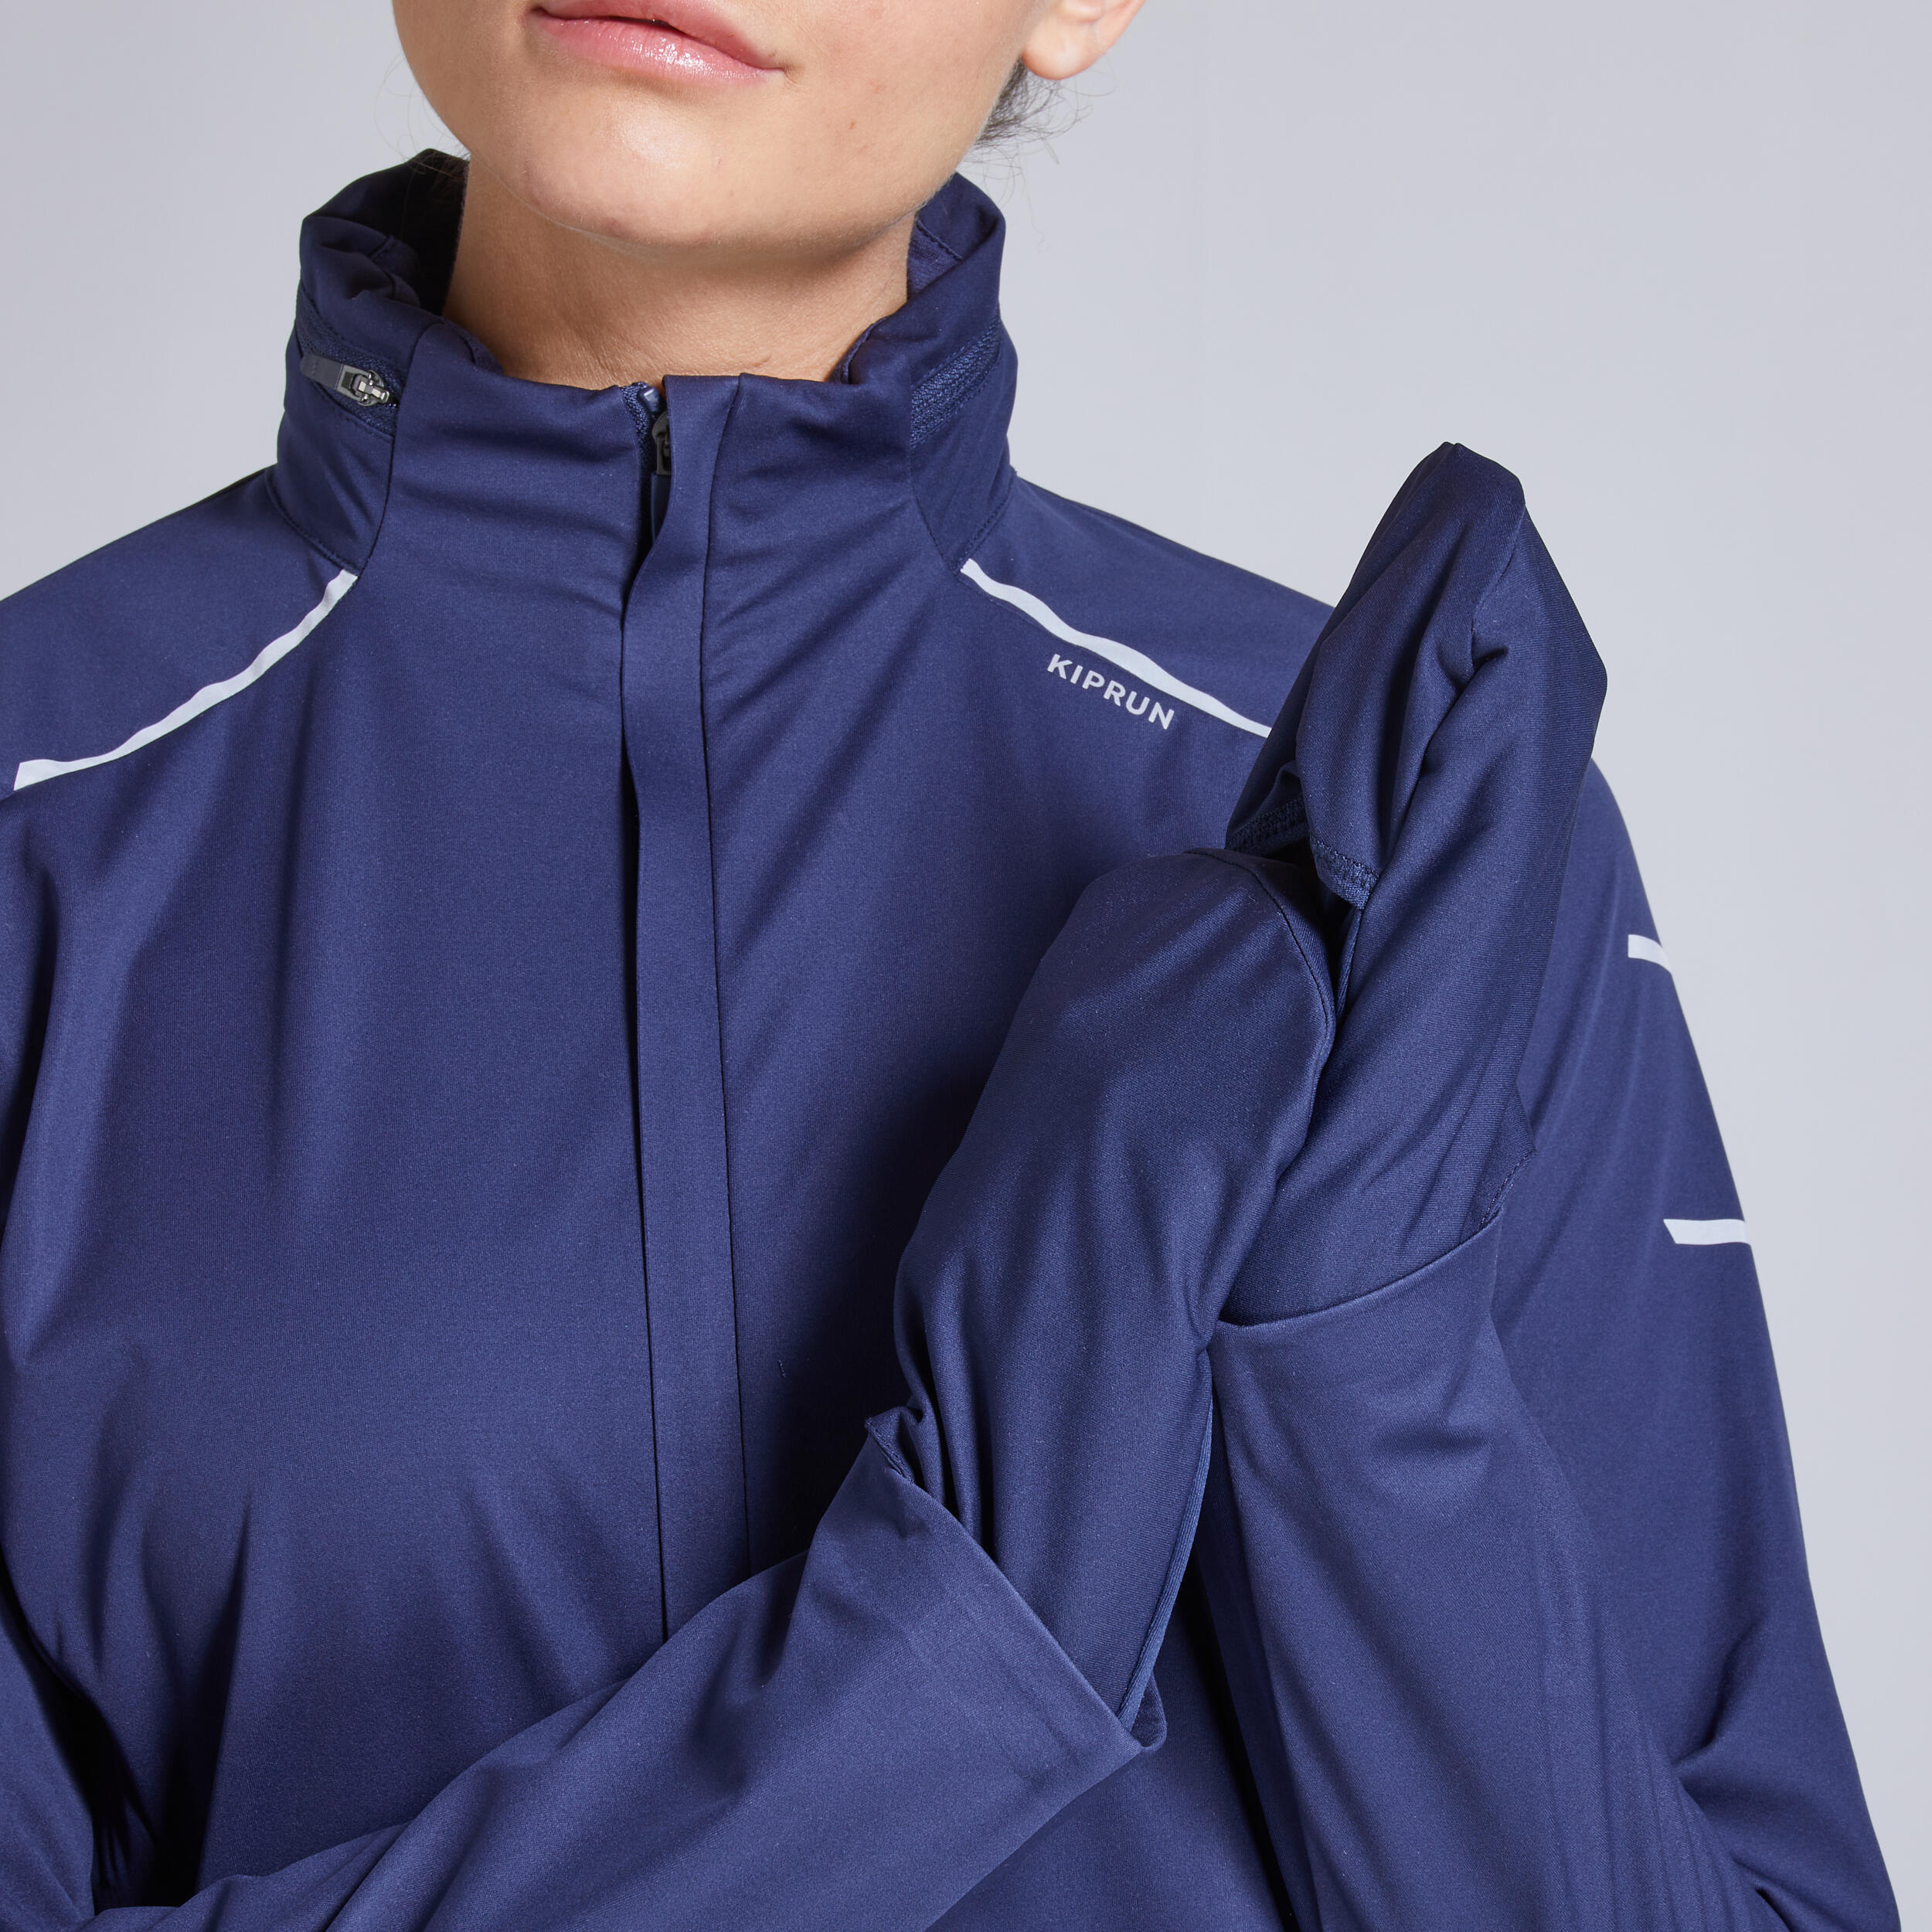 Kiprun Warm Regul Women's Winter Running Windproof Water Repellent Jacket - navy 6/12